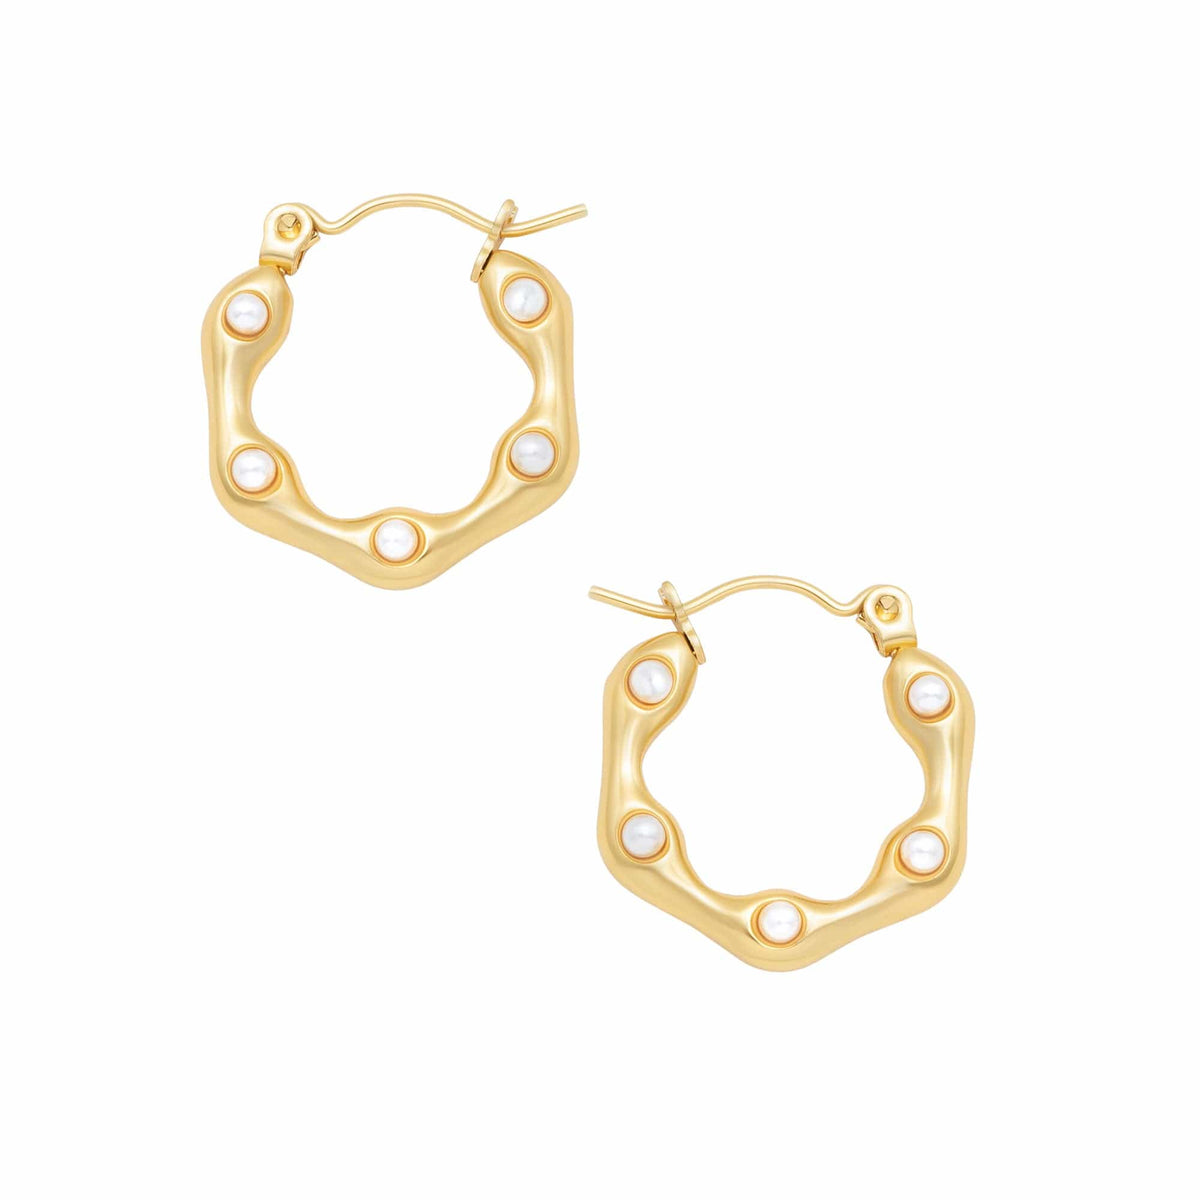 BohoMoon Stainless Steel Lilo Pearl Hoop Earrings Gold